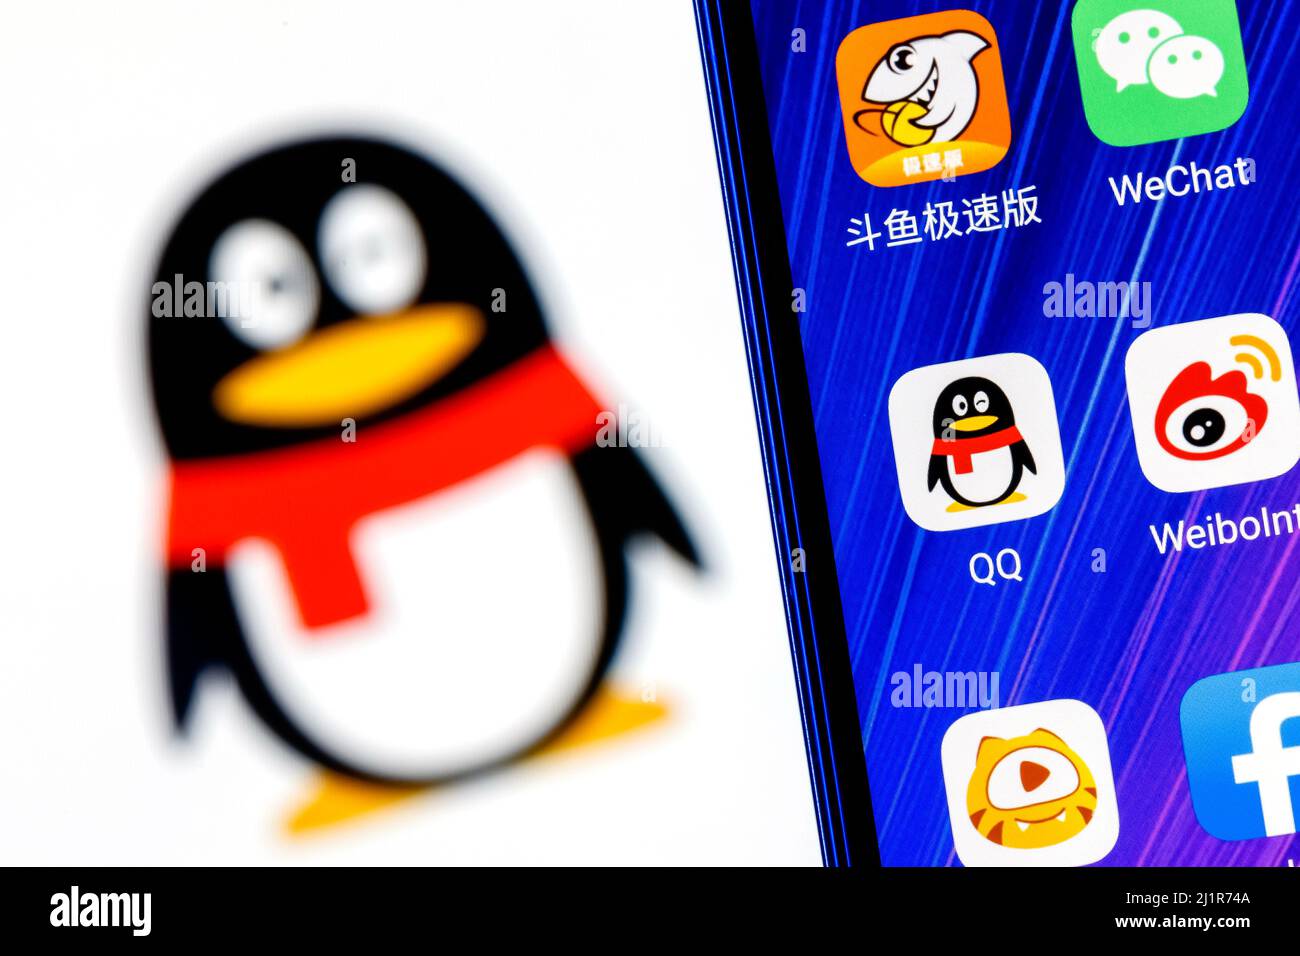 Das Symbol der chinesischen Nachrichtendienst-Anwendung Tencent QQ unter anderem auf dem Smartphone-Bildschirm. Auf dem Hintergrund ist das QQ-Logo zu sehen. Stockfoto